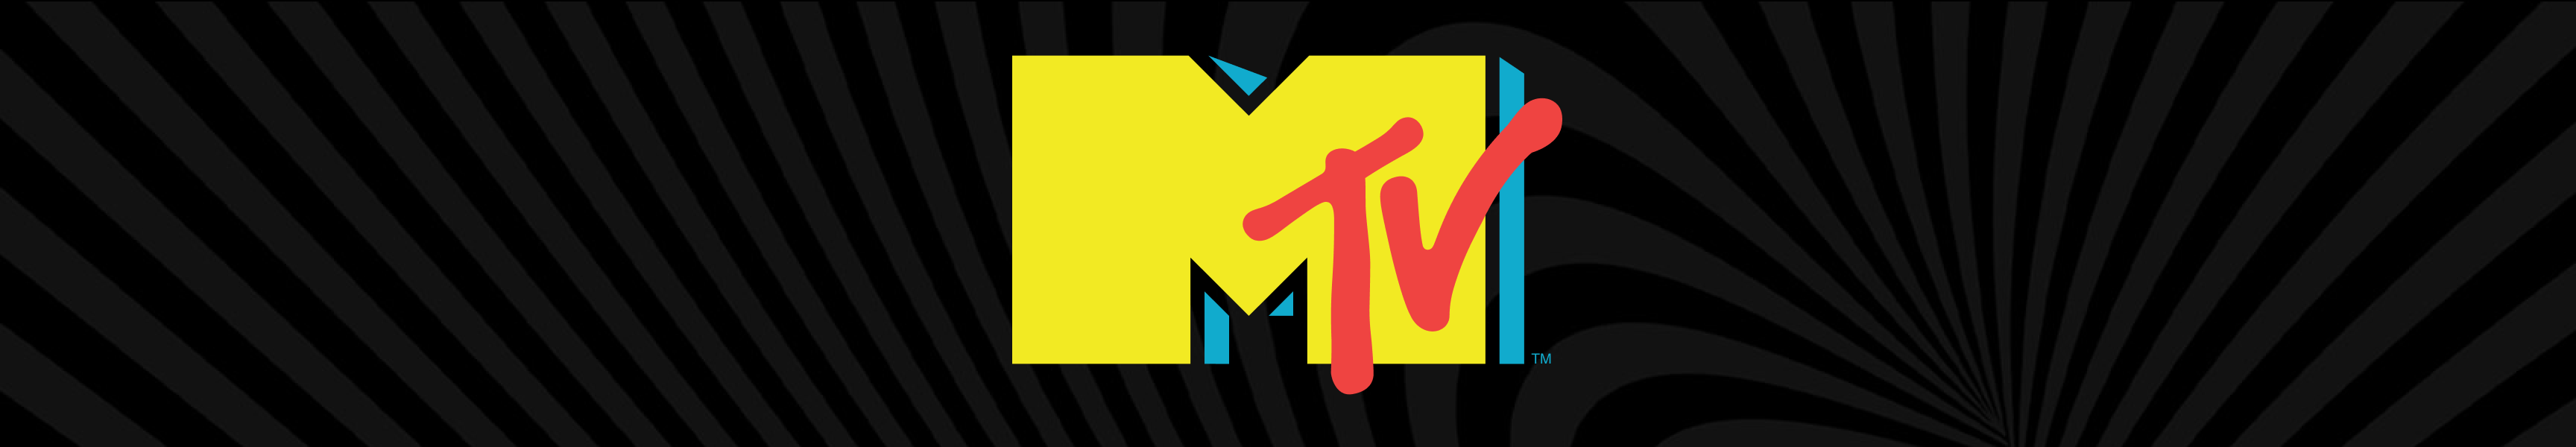 Cadeaux MTV Last Chance